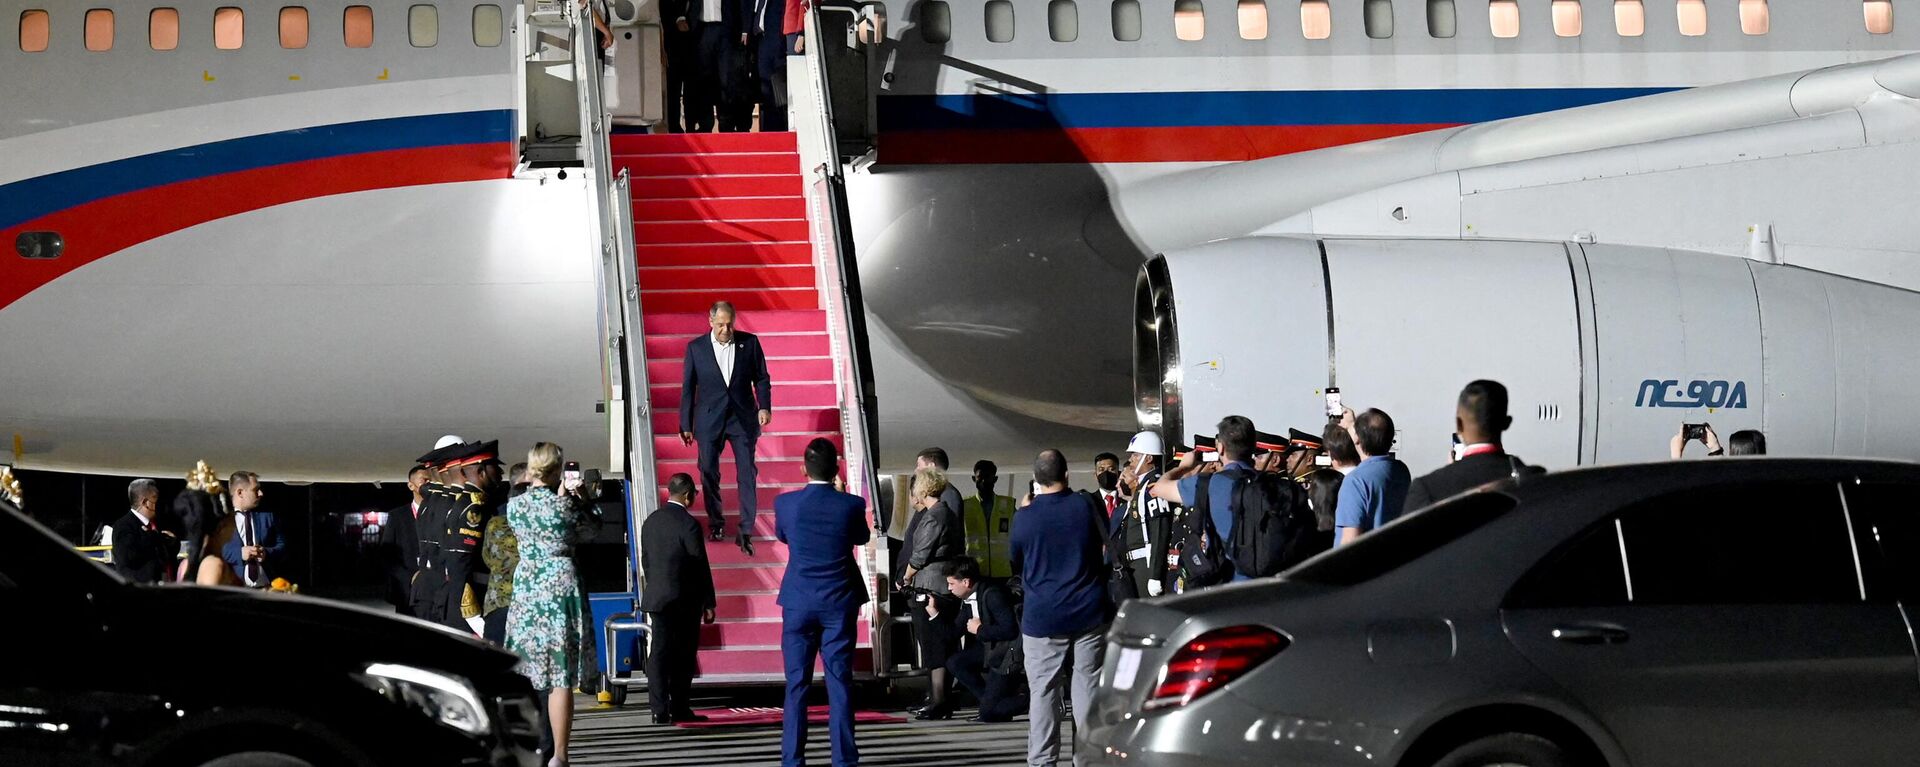 Ngoại trưởng Nga Sergei Lavrov đã đến sân bay Quốc tế Tuban, Bali để dự đến dự hội nghị thượng đỉnh G20 - Sputnik Việt Nam, 1920, 15.11.2022